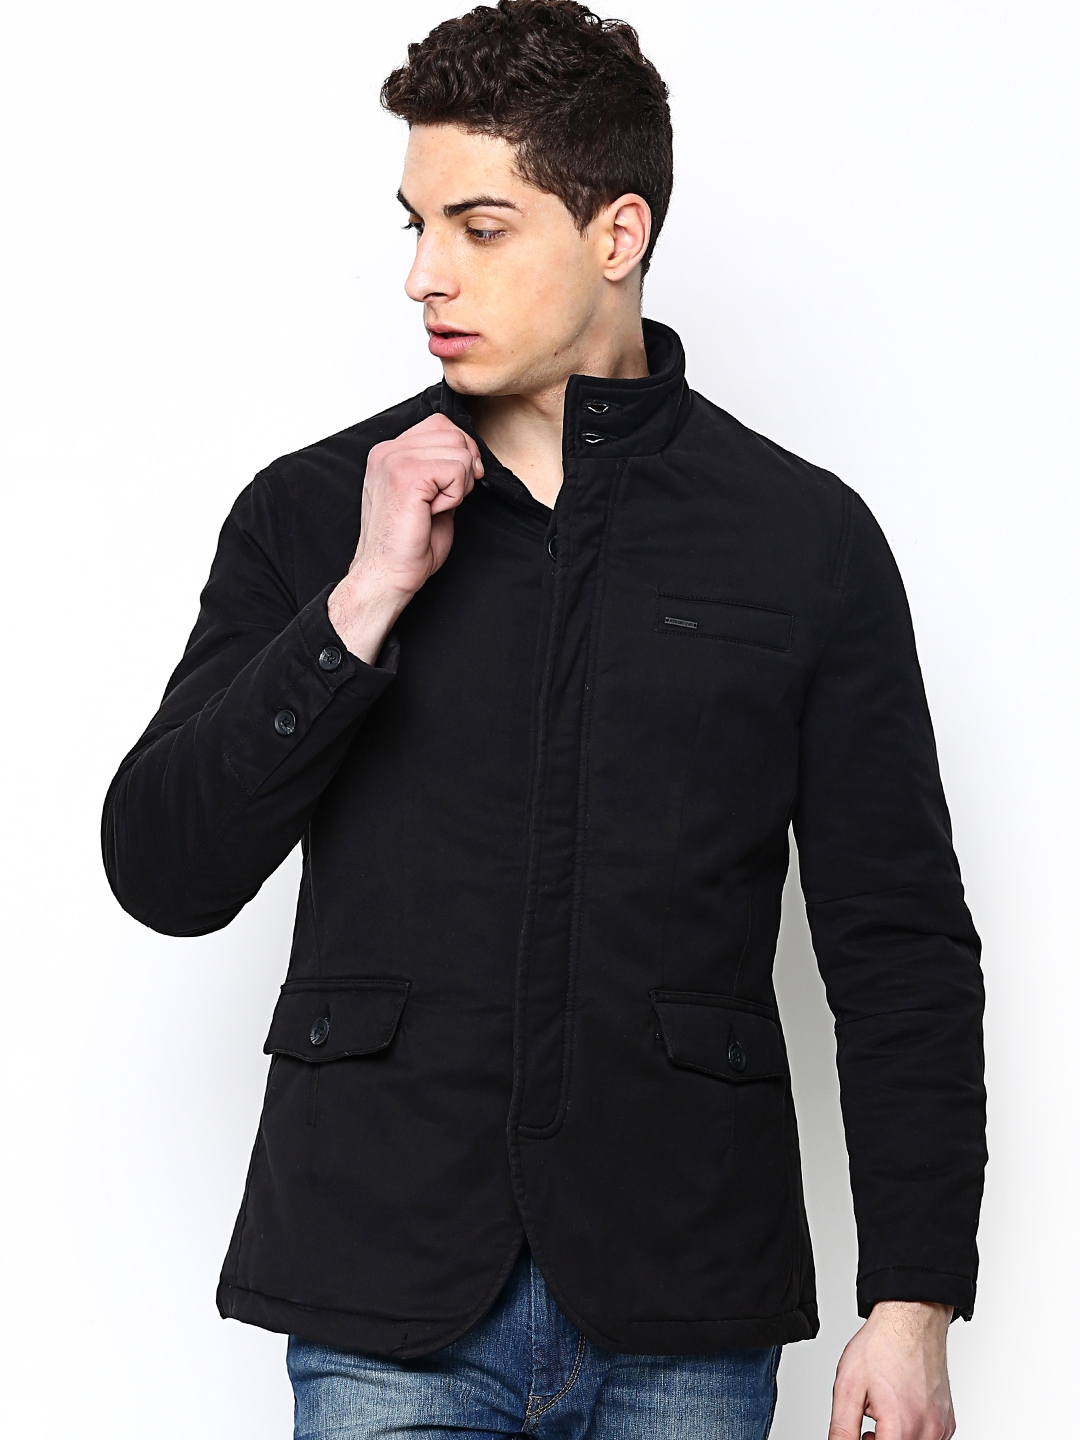 Buy Numero Uno Men Black Jacket - Jackets for Men 575067 | Myntra